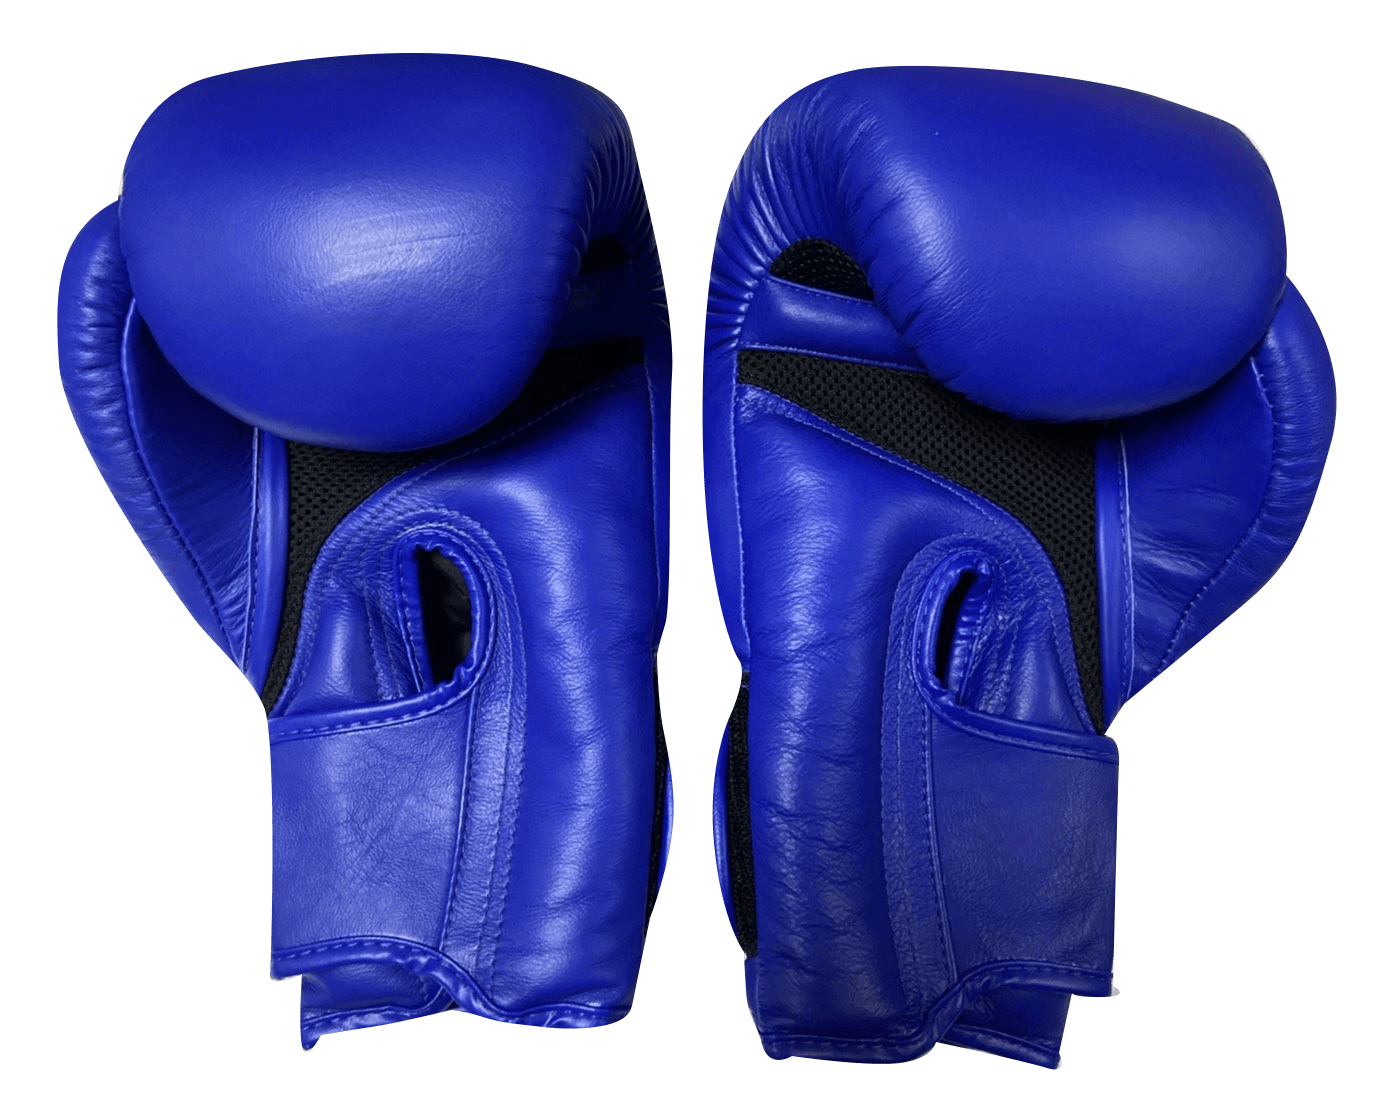 Top King Boxing Gloves TKBGSA Super Air Blue - SUPER EXPORT SHOP